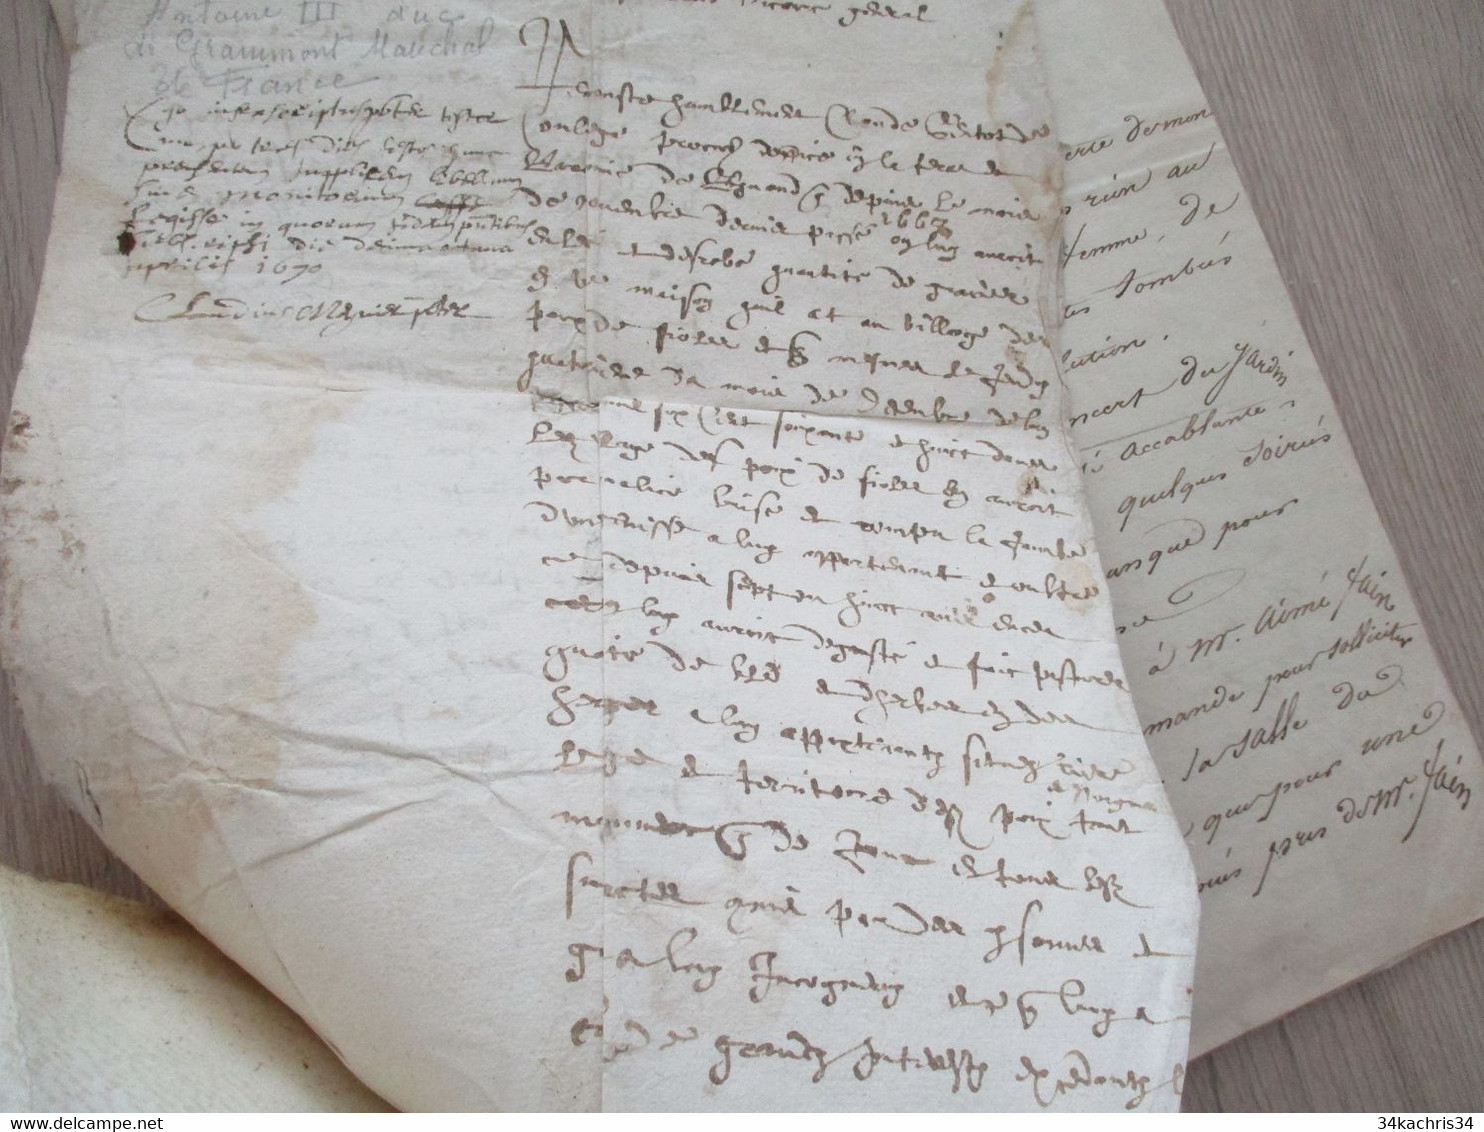 X2  Documents Dont 1669 De Grammont. Texte à Découvrir - Manuscritos